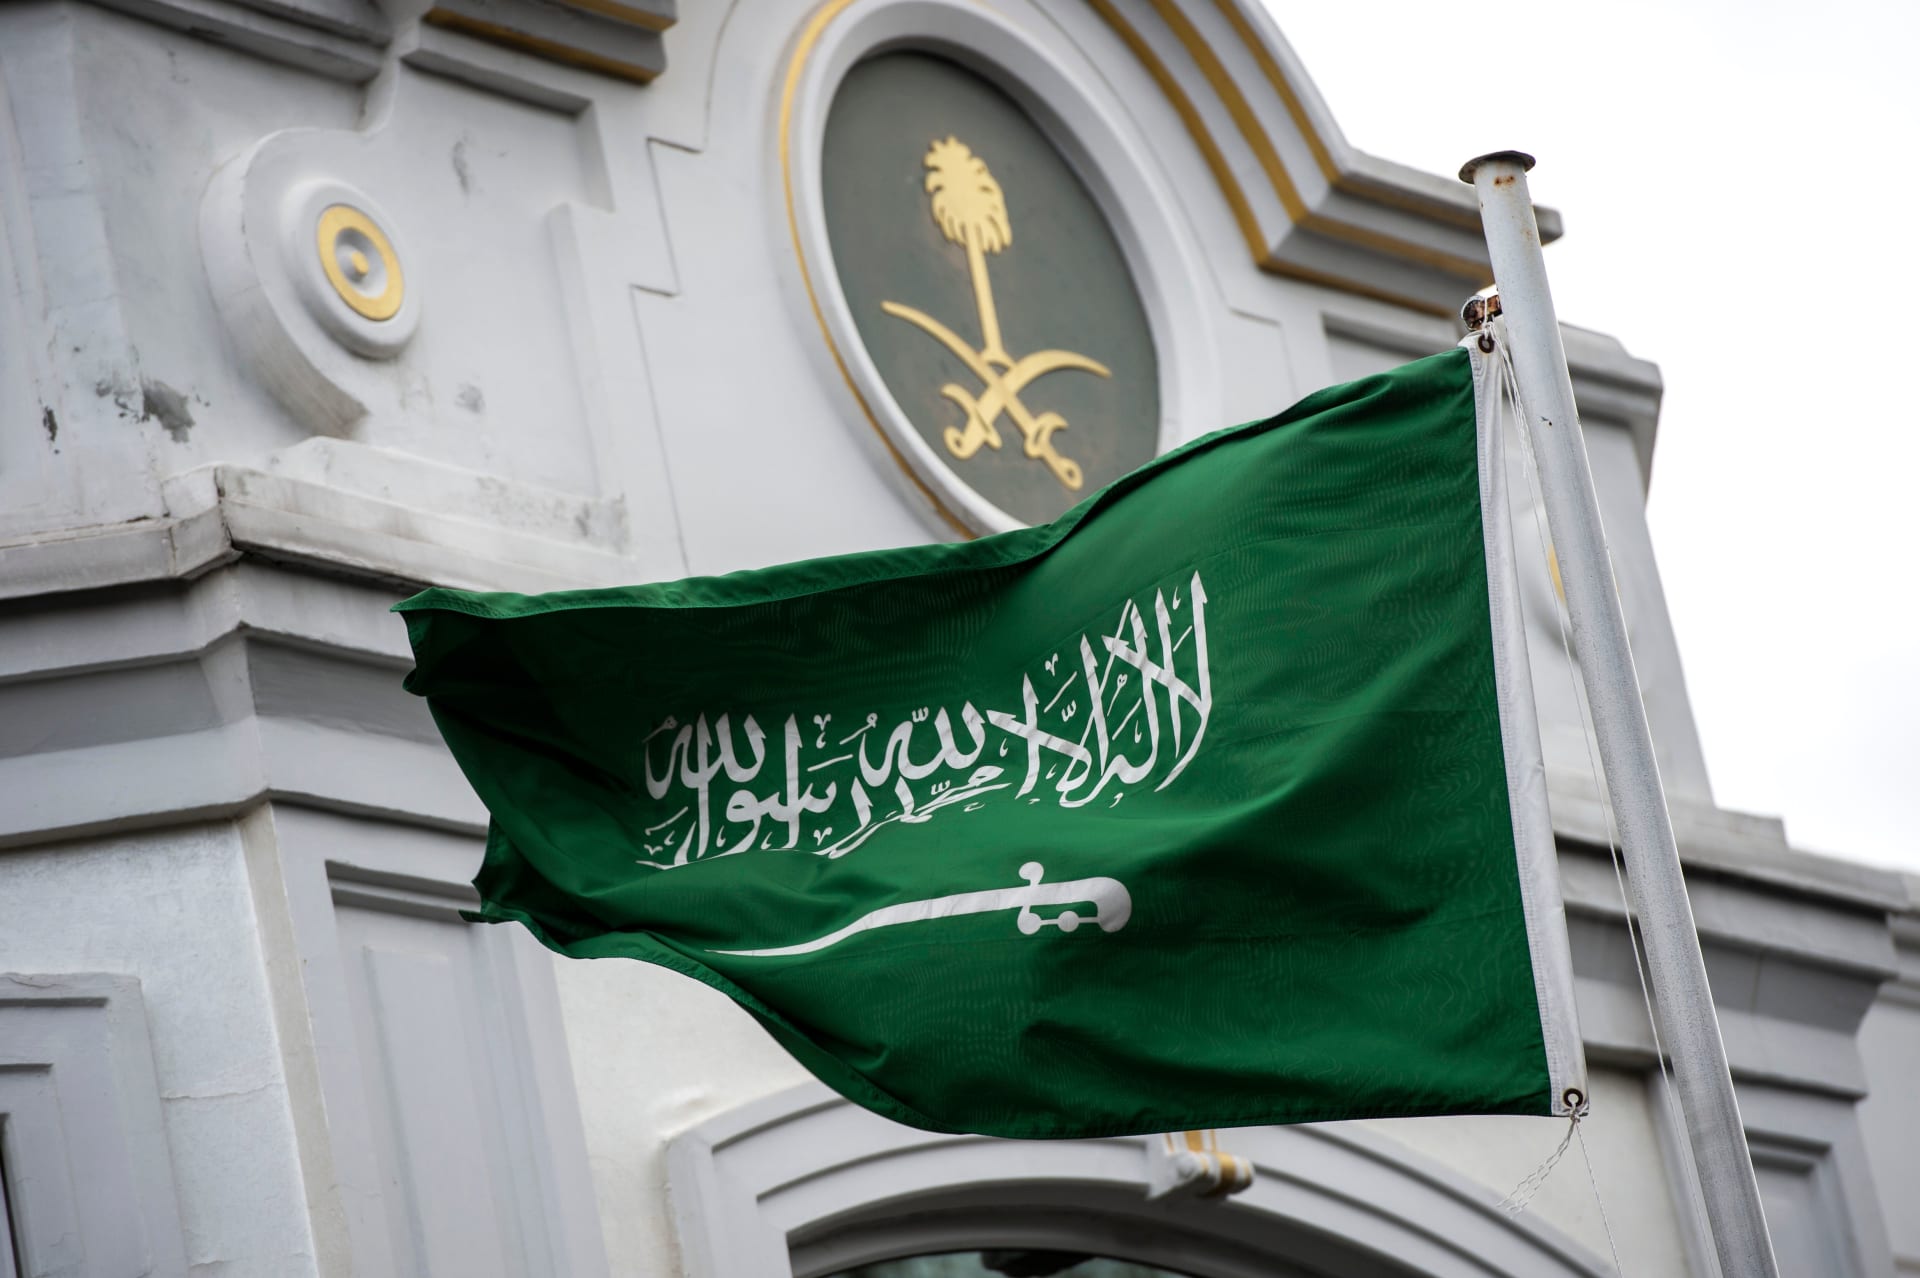 يبدأ 15 يونيو.. قرار هام للسلطات السعودية بشأن العمل على أراضي المملكة